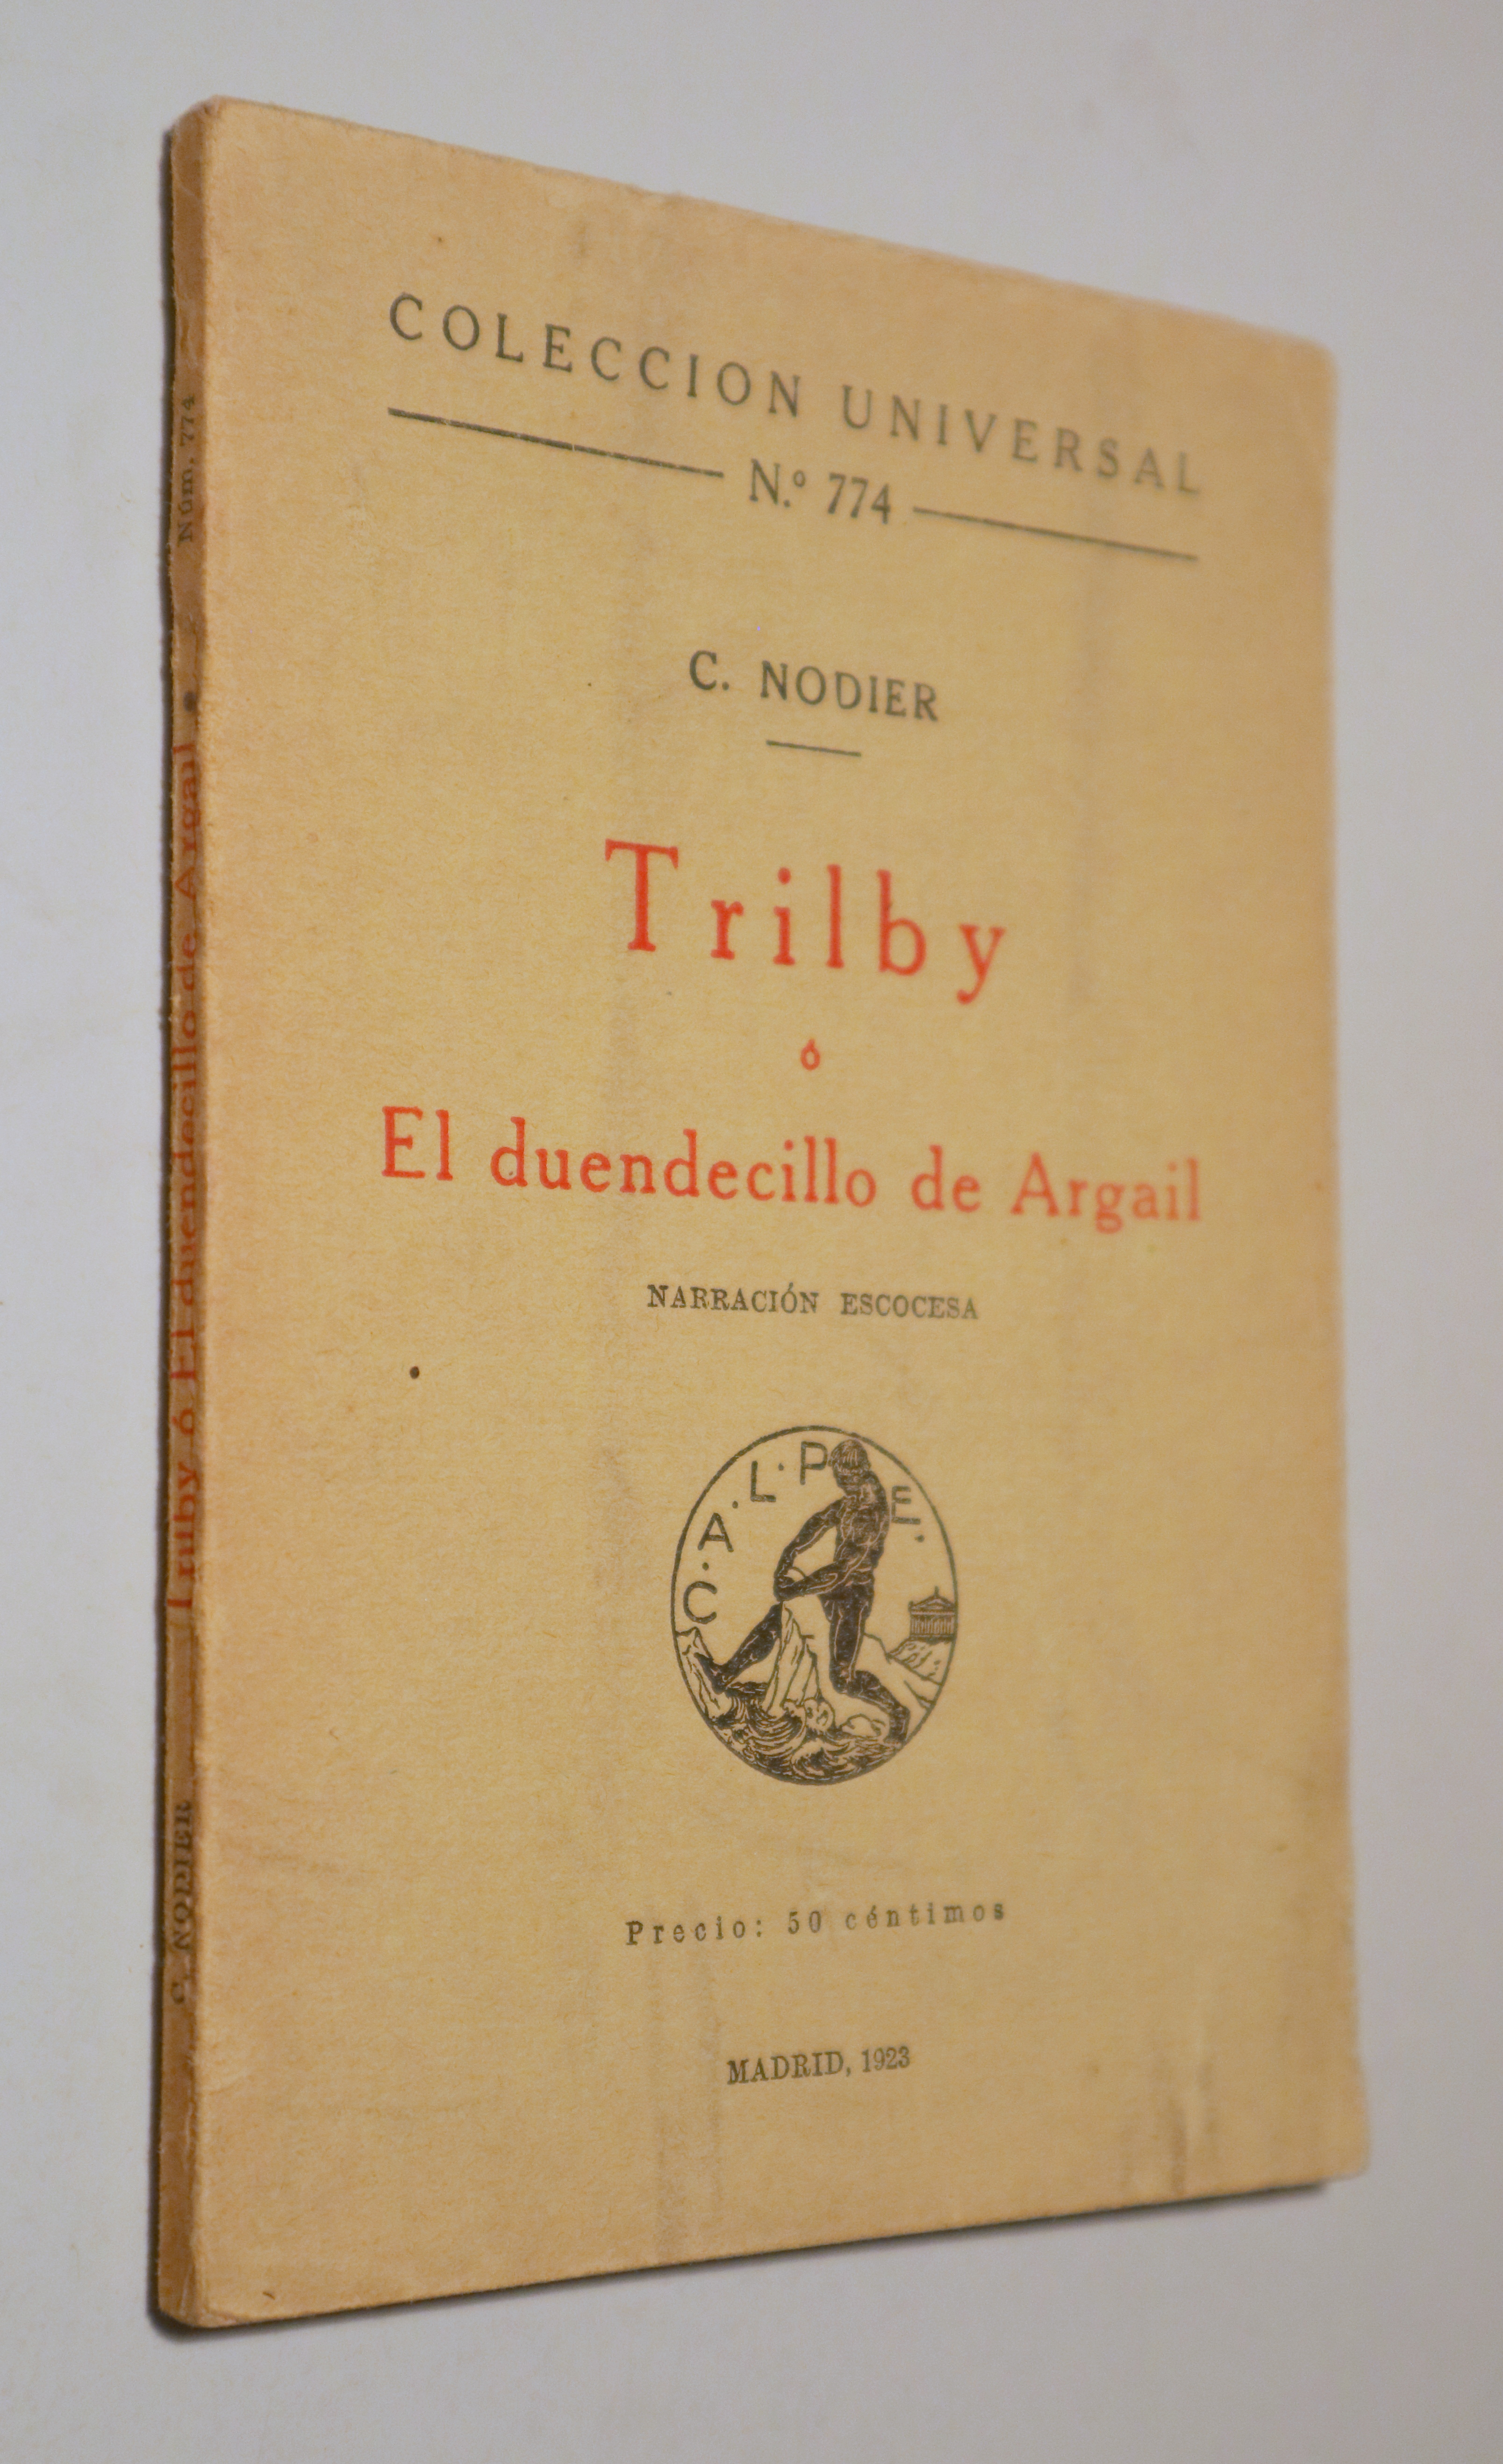 TRILBY Ó EL DUENDECILLO DE ARGAIL. Narración escocesa - Madrid 1923